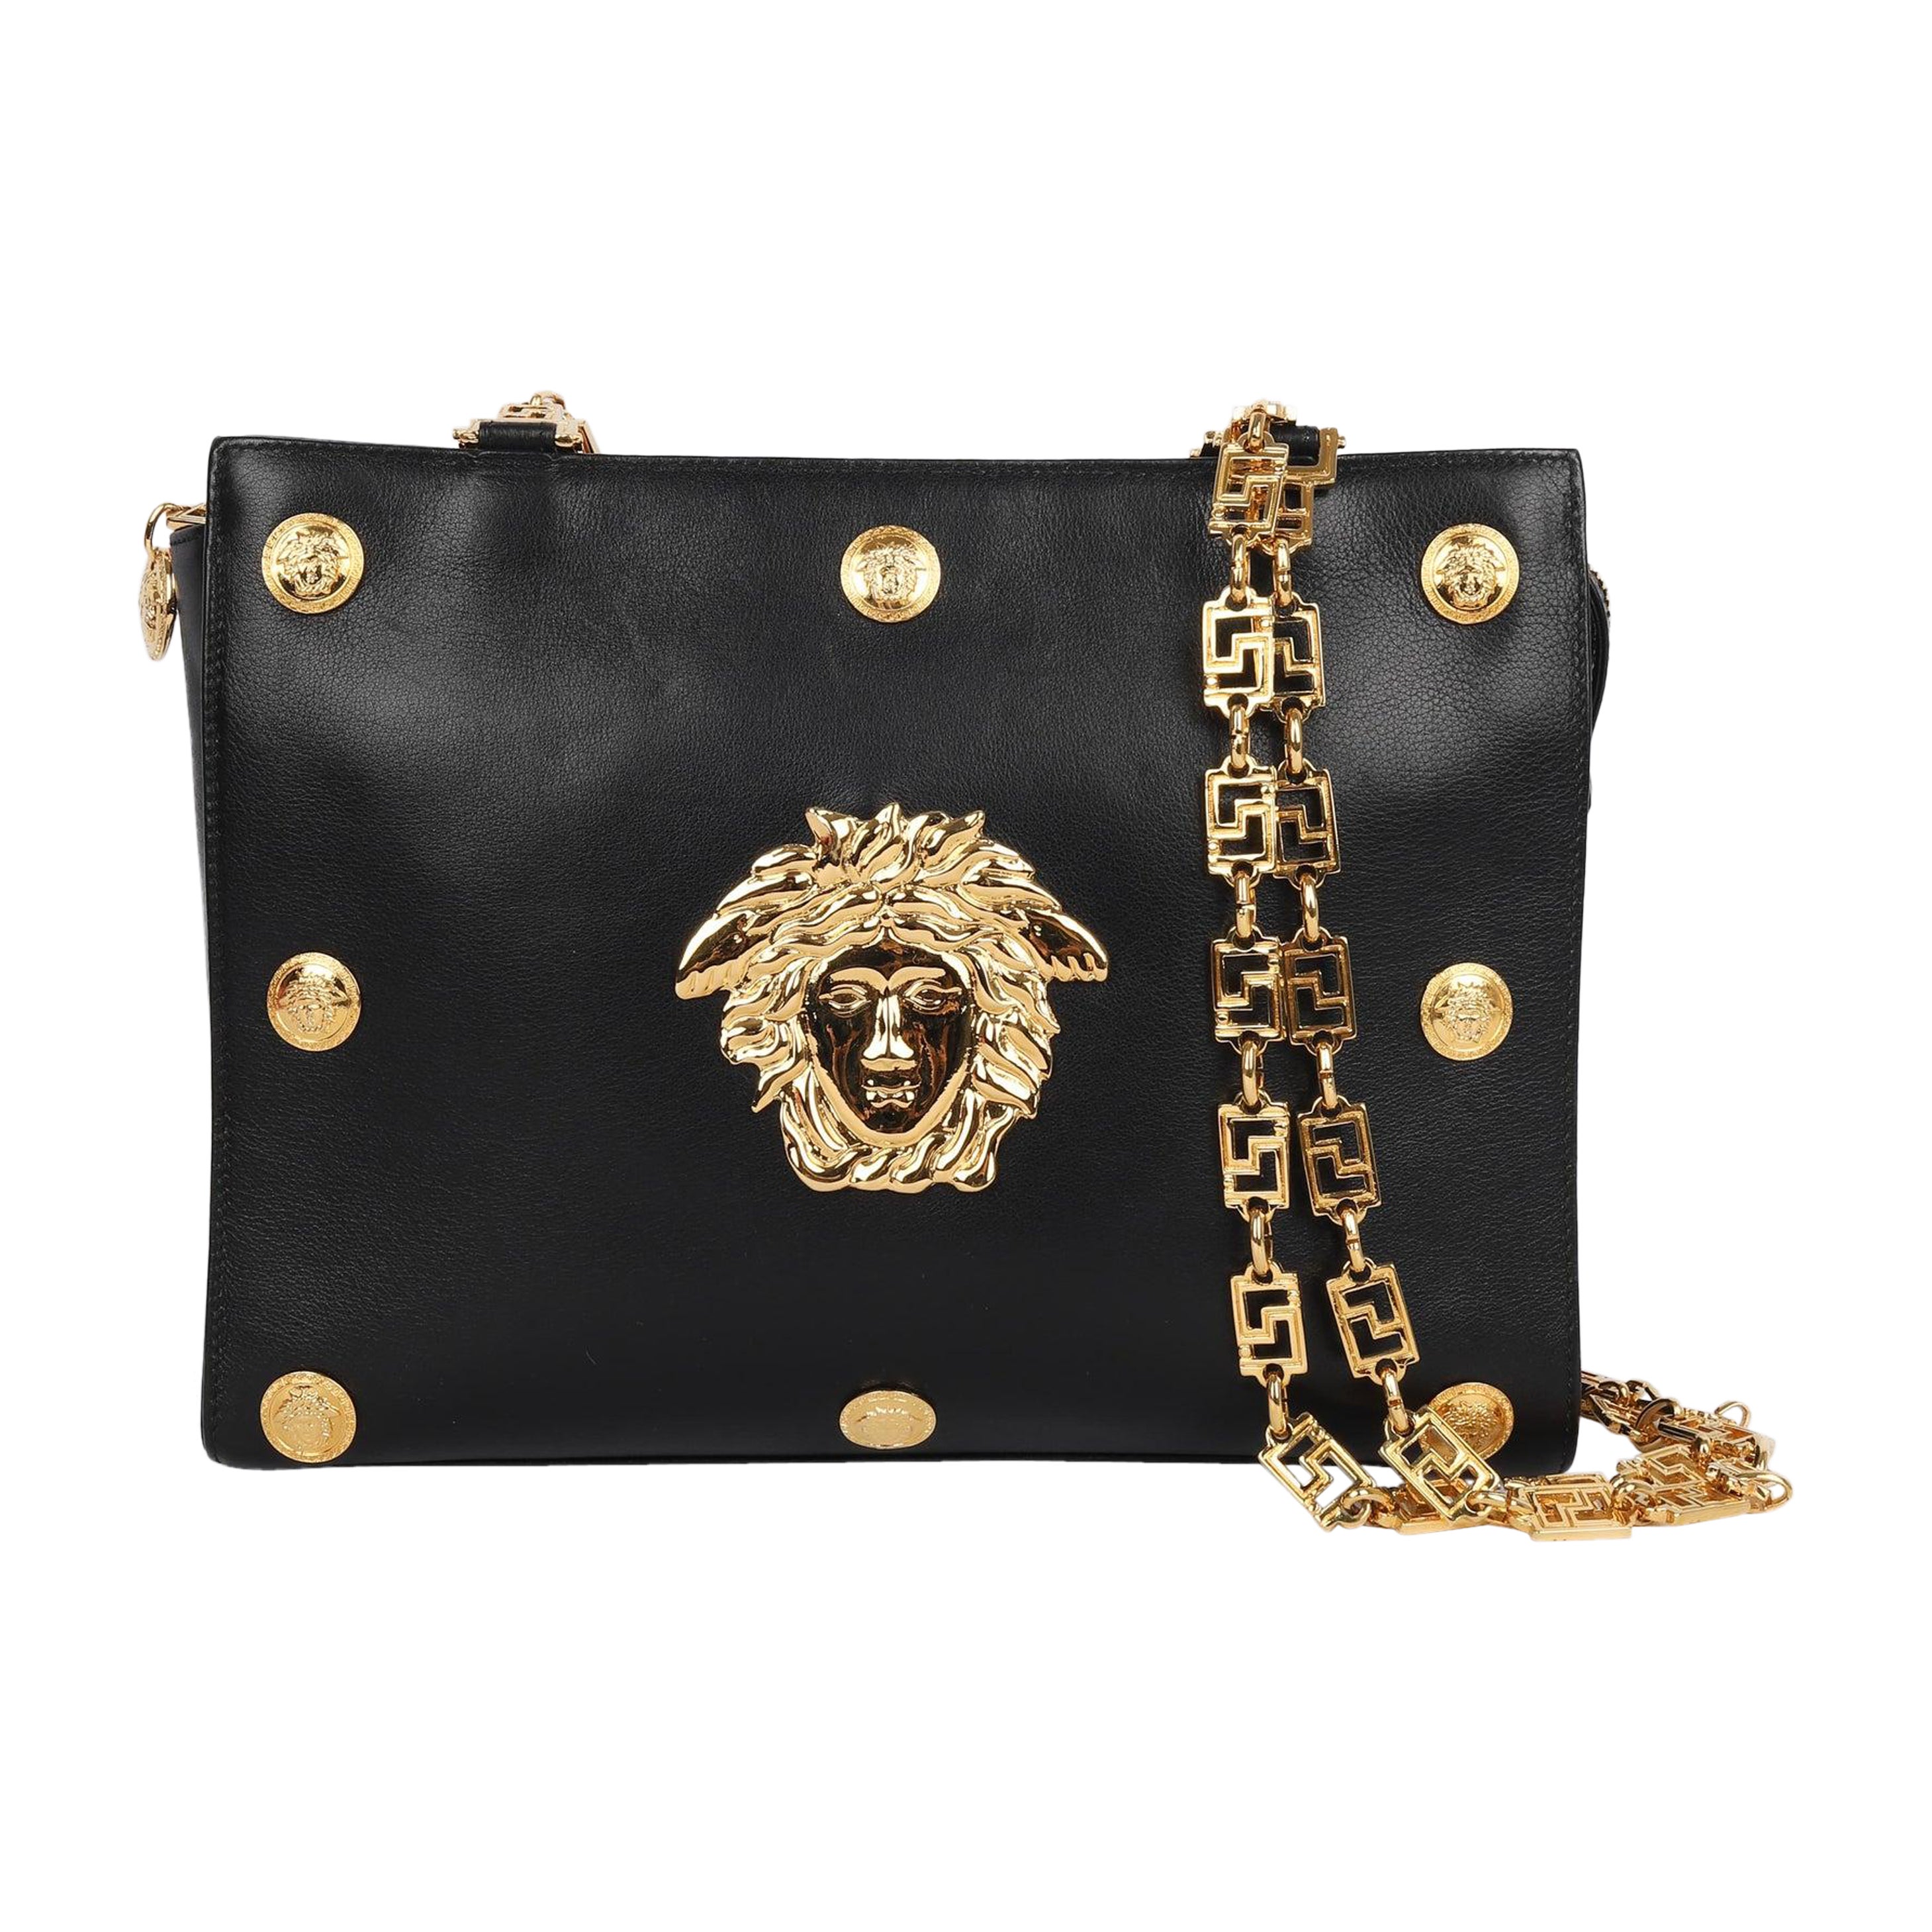 How do I spot a genuine Versace handbag?